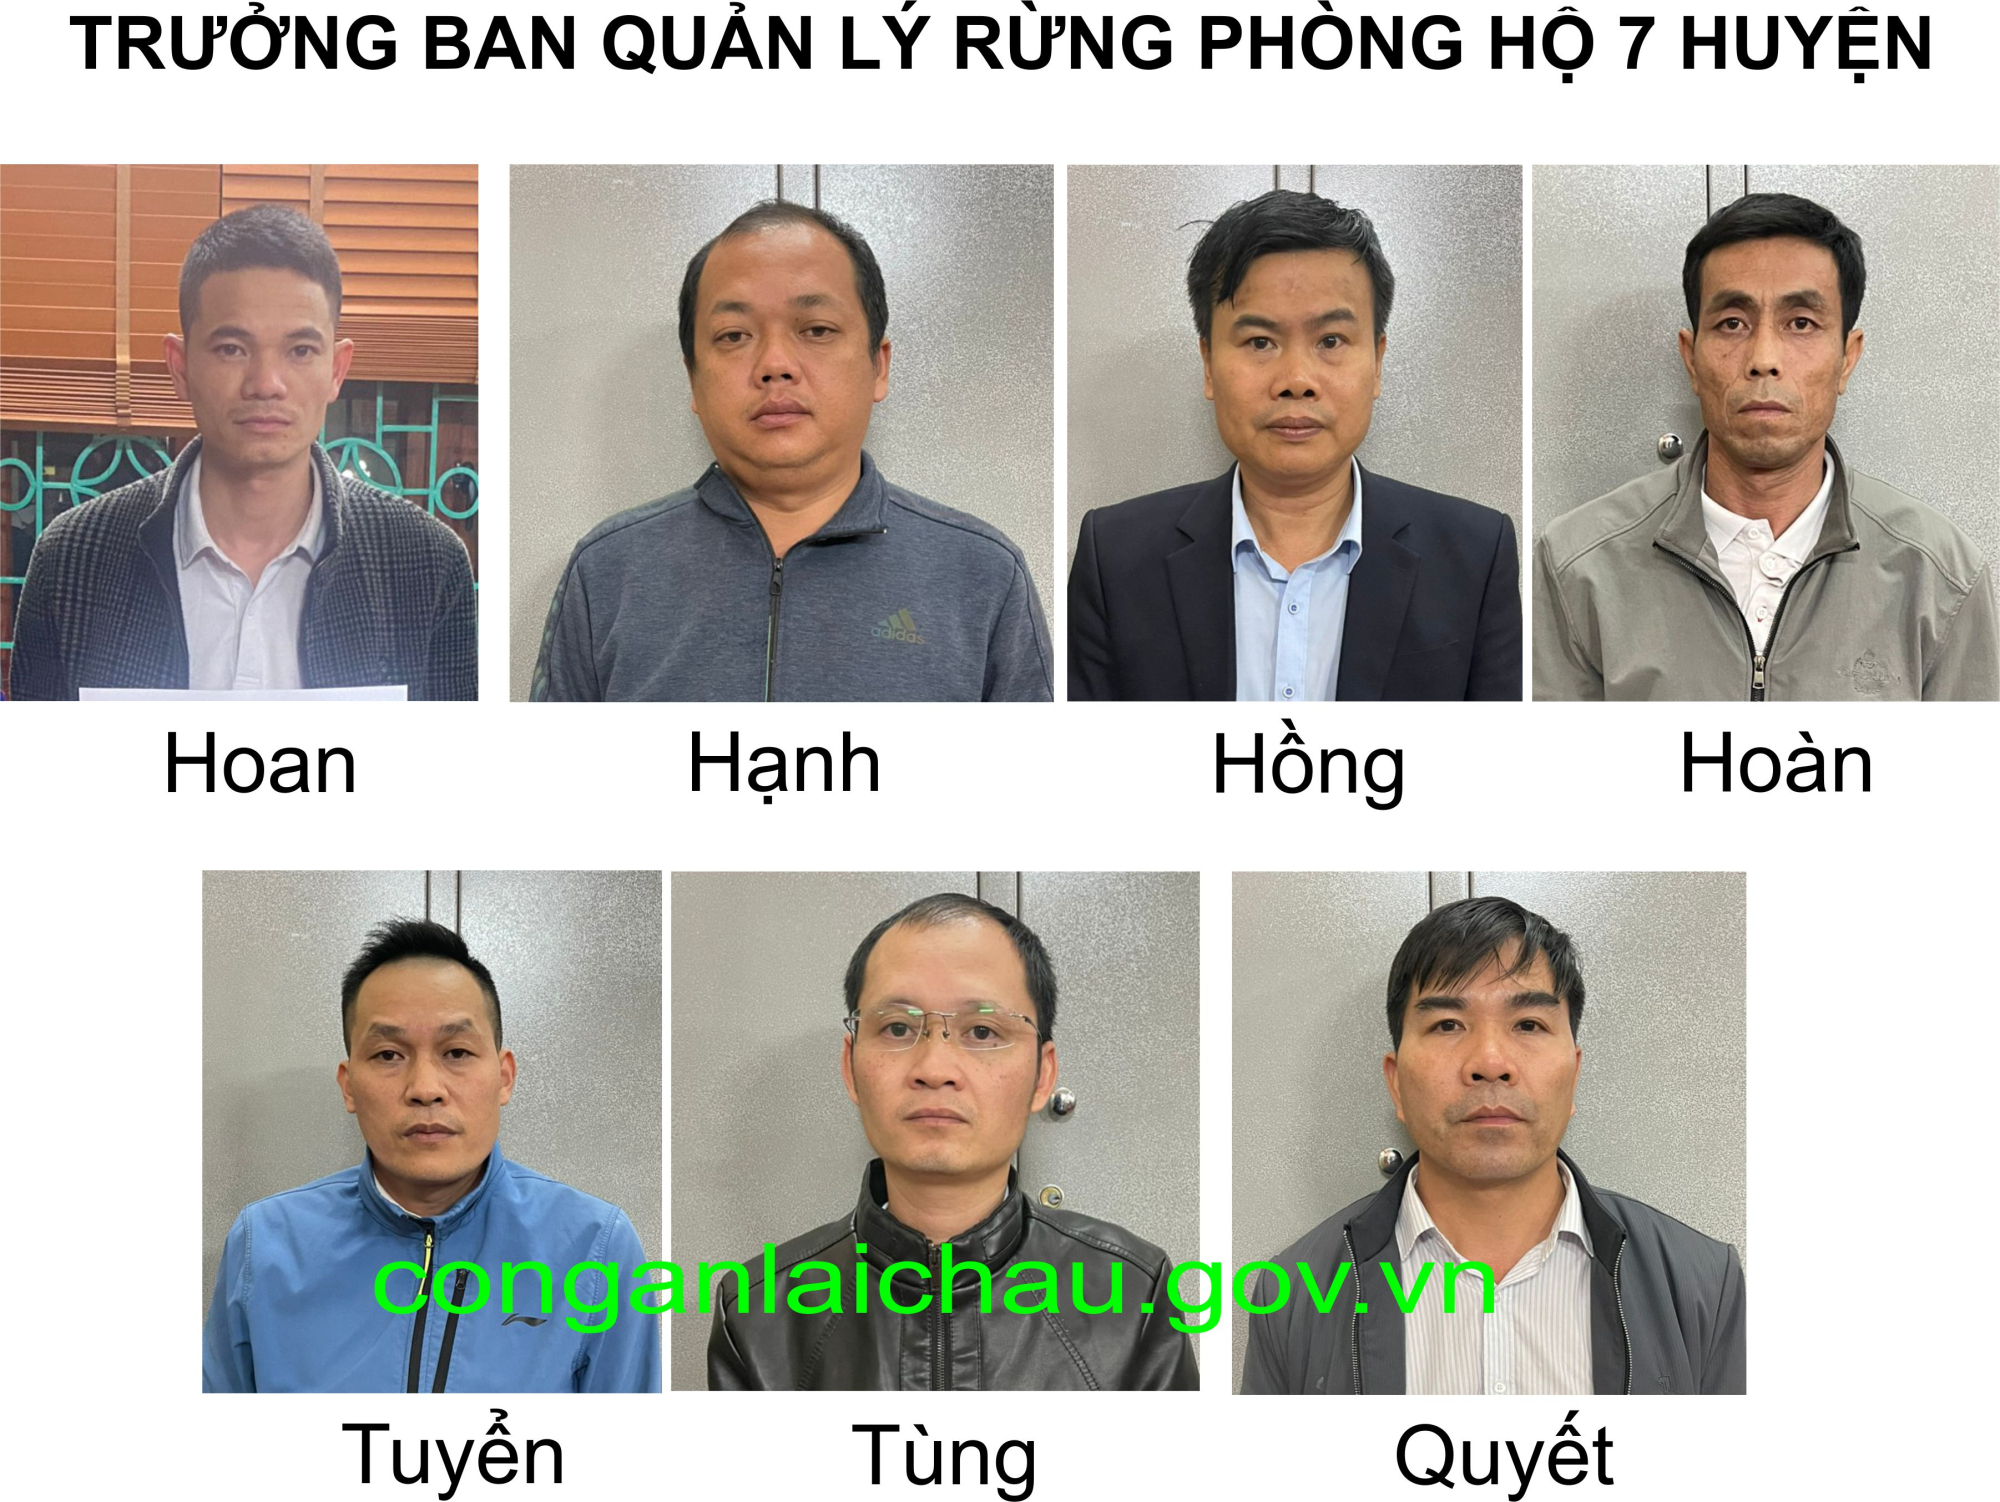 Bắt giữ 15 cán bộ, công chức ở Lai Châu đưa, nhận hối lộ khi thanh tra các dự án trồng rừng